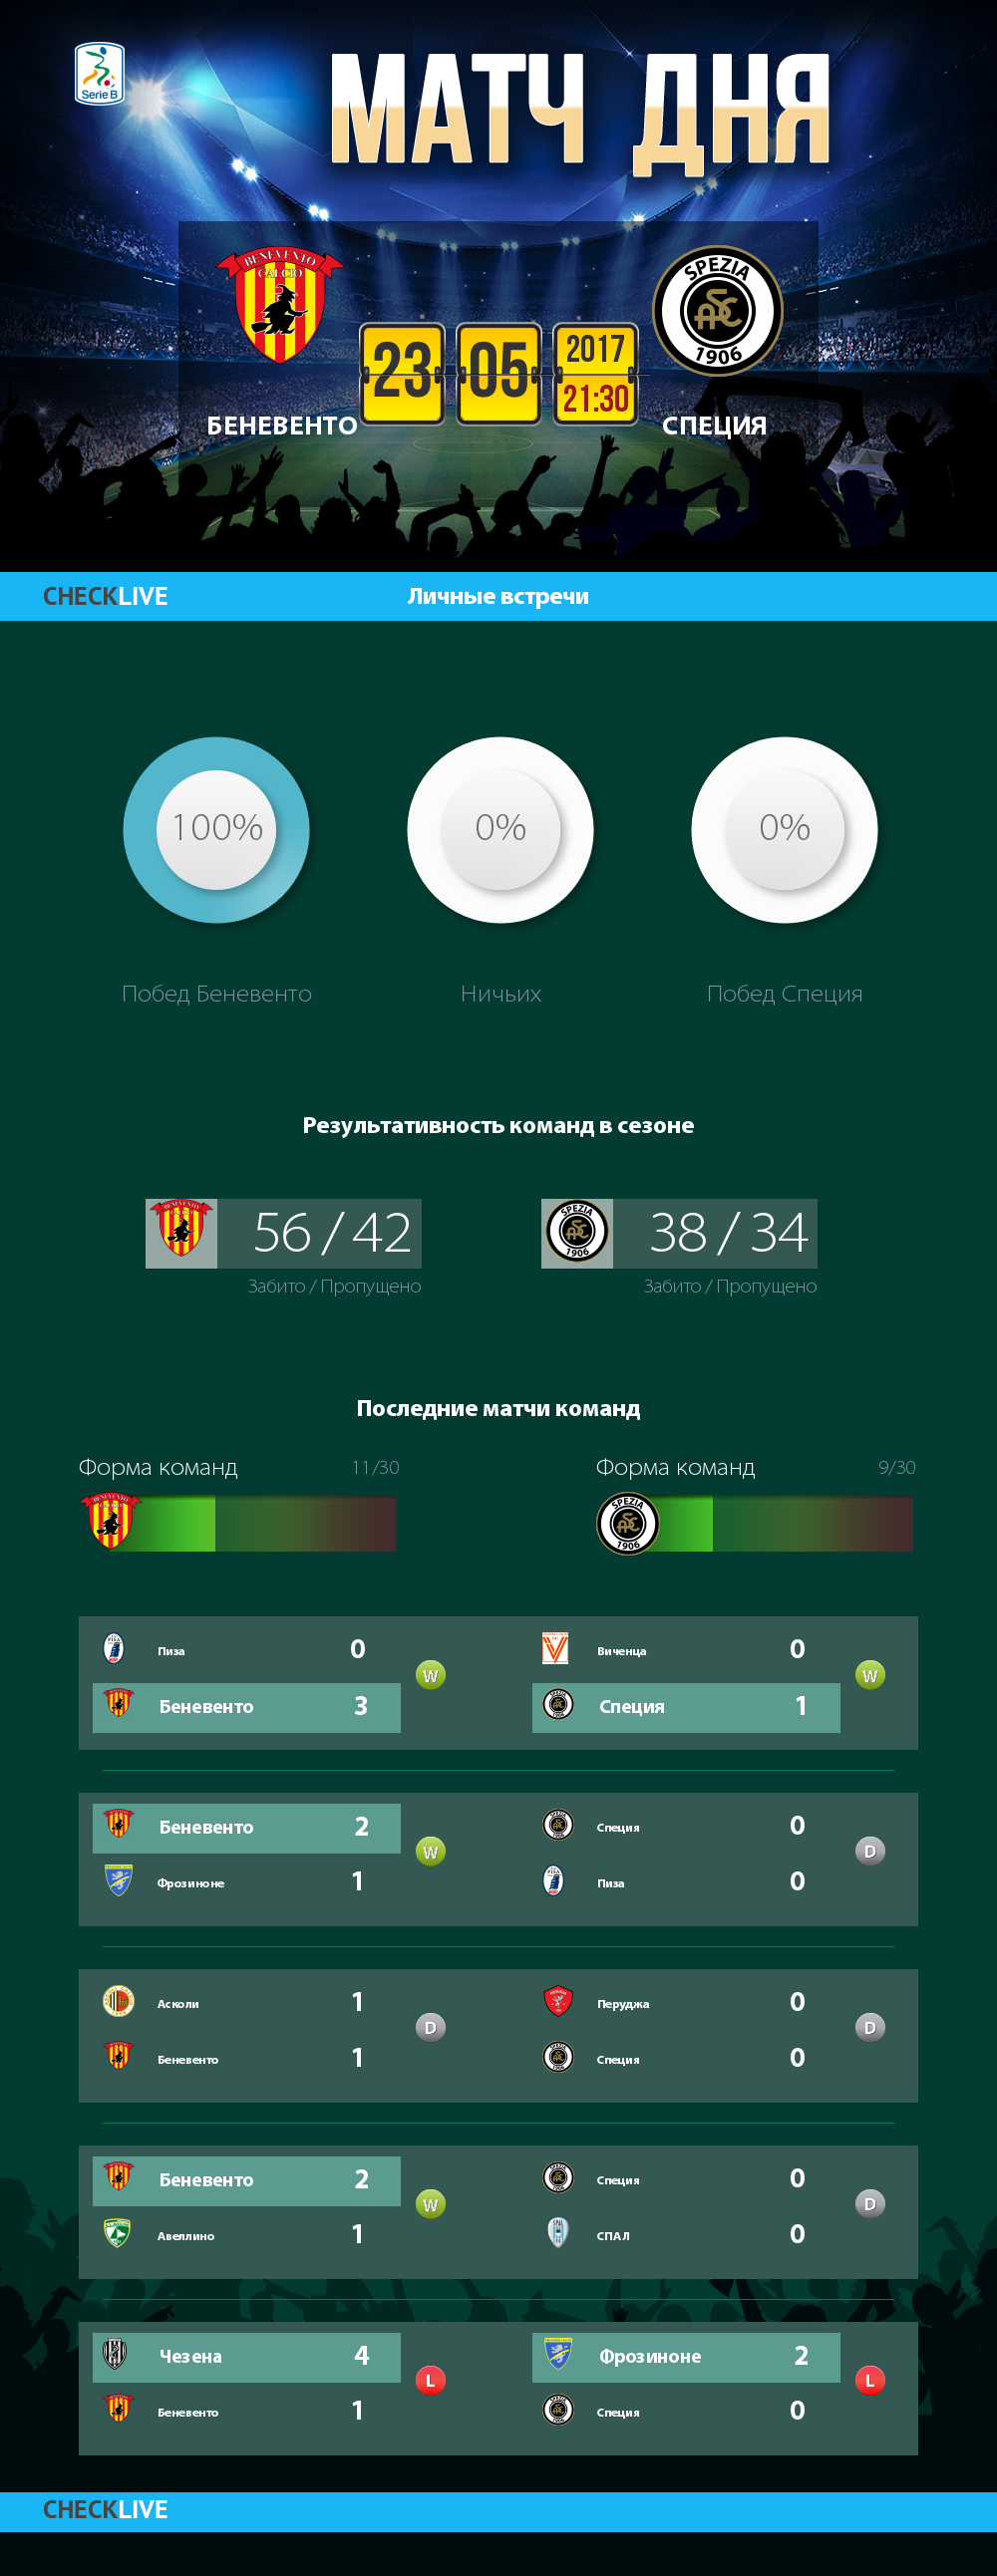 Инфографика Беневенто и Специя матч дня 23.05.2017